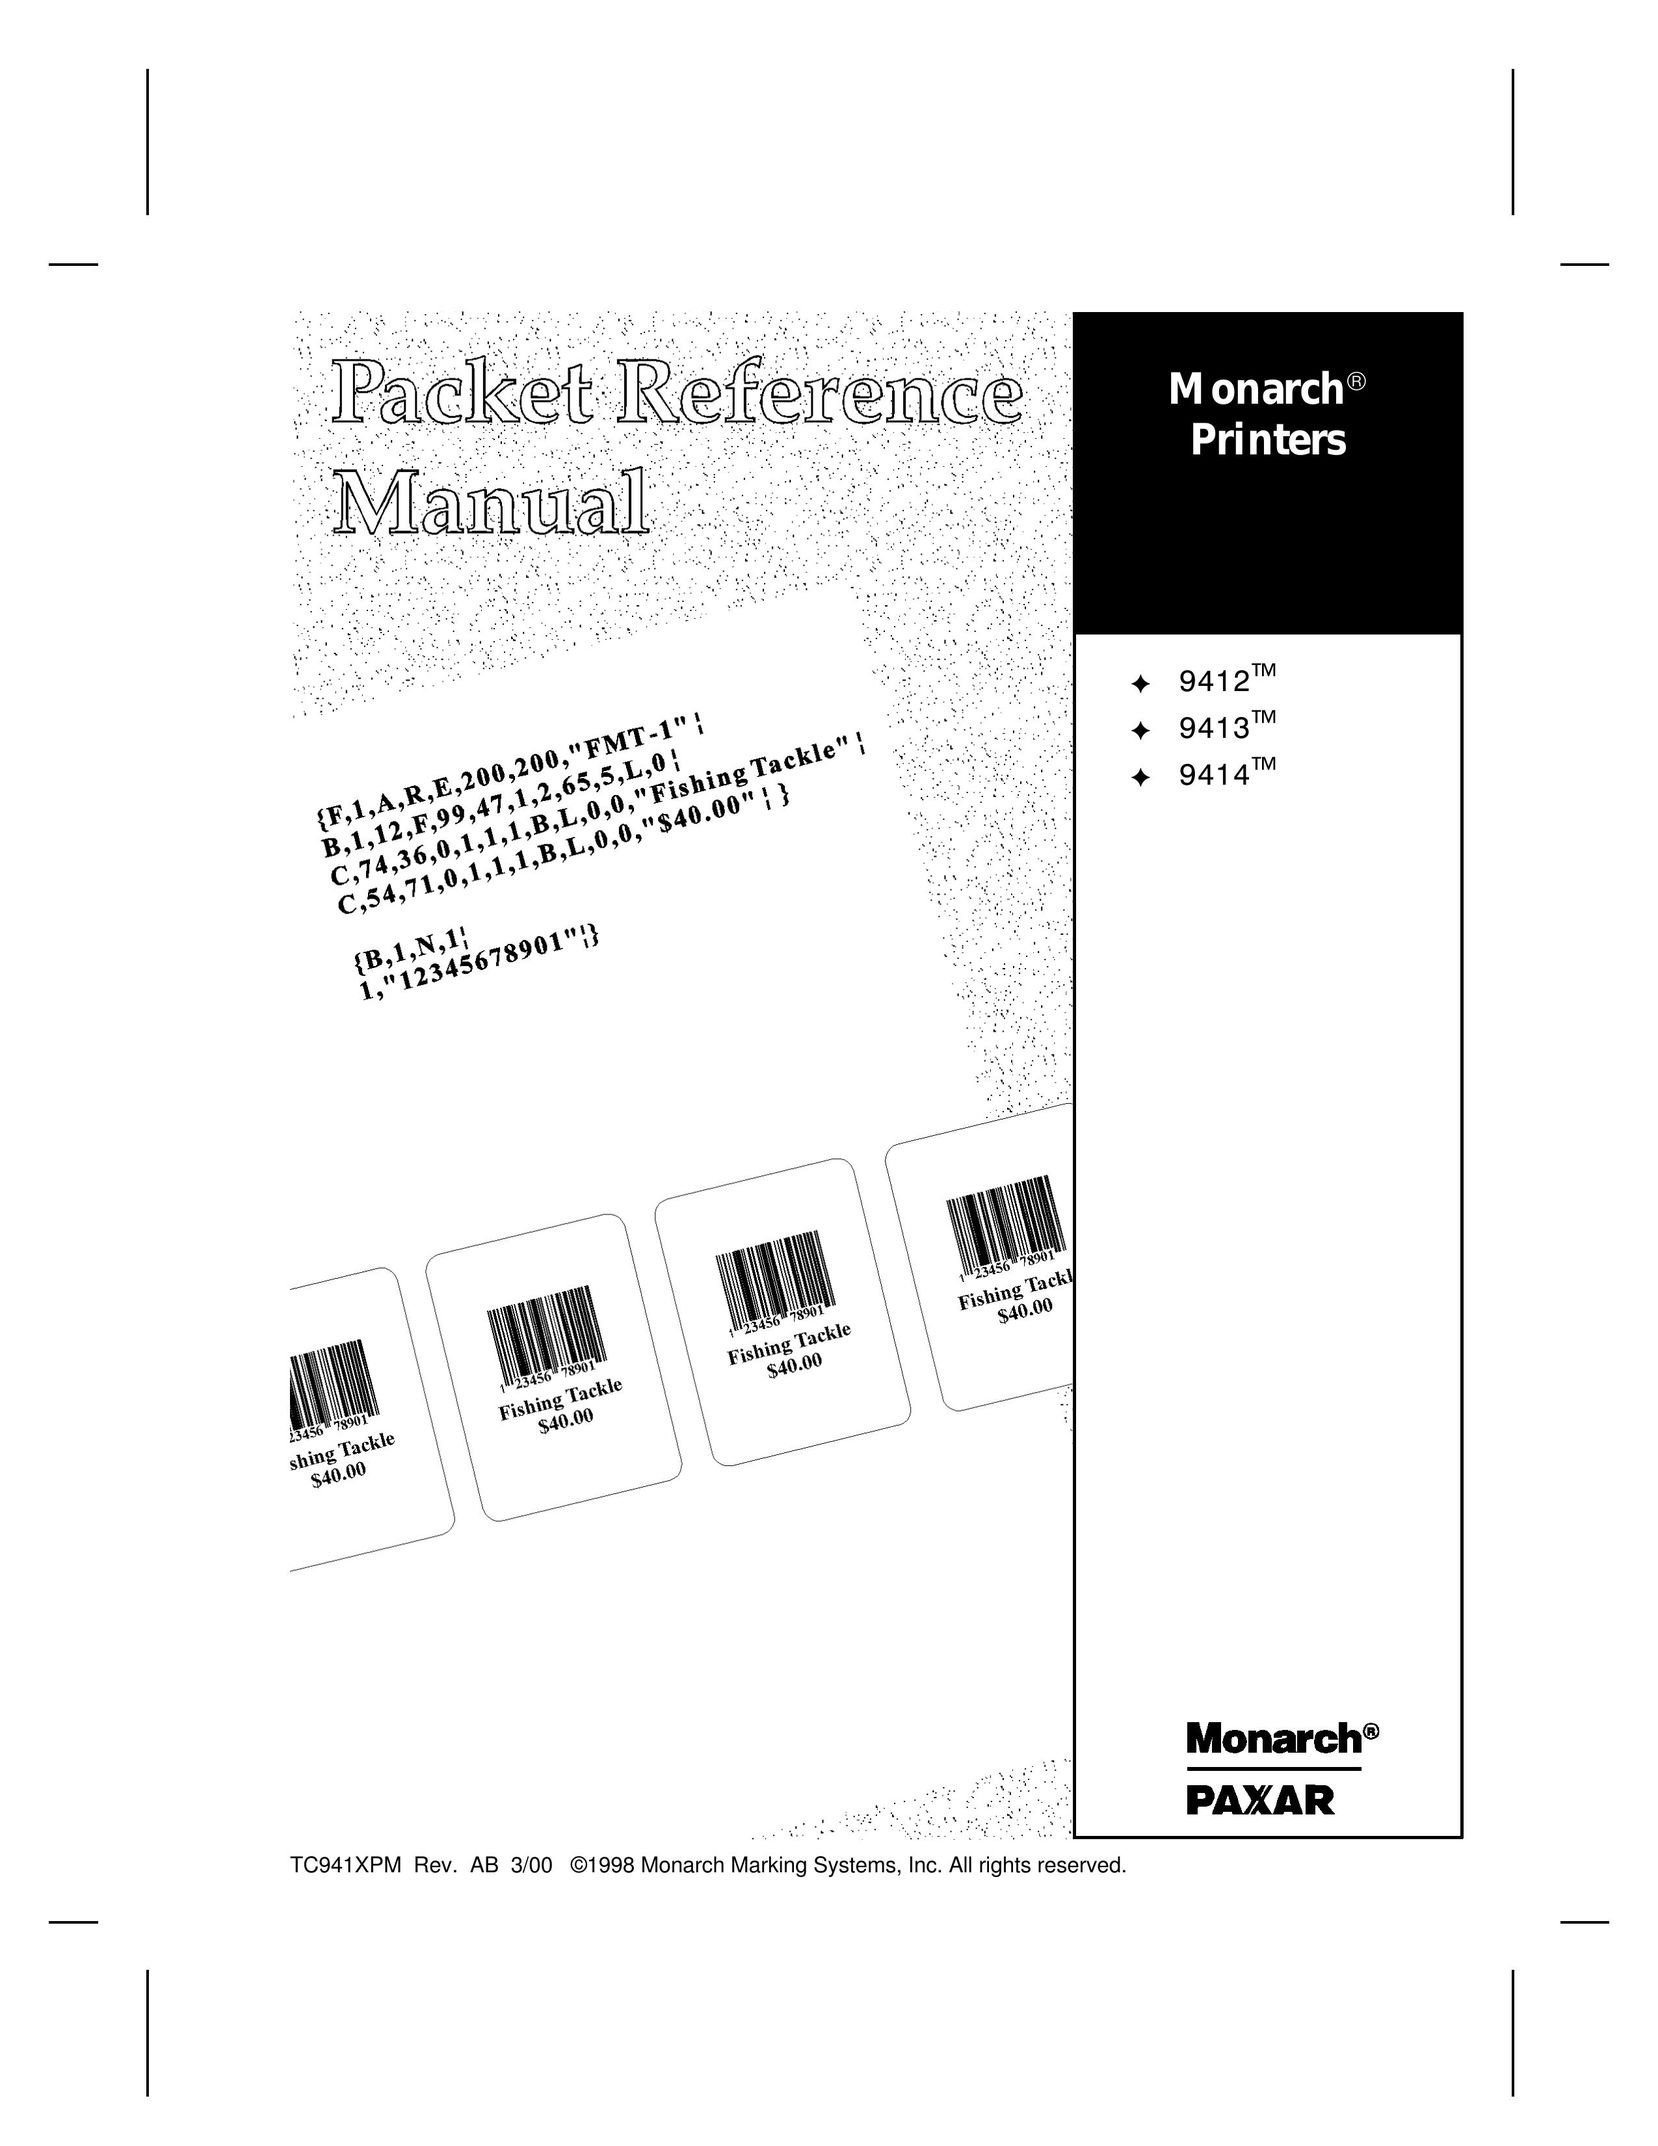 Paxar 9412 Printer User Manual